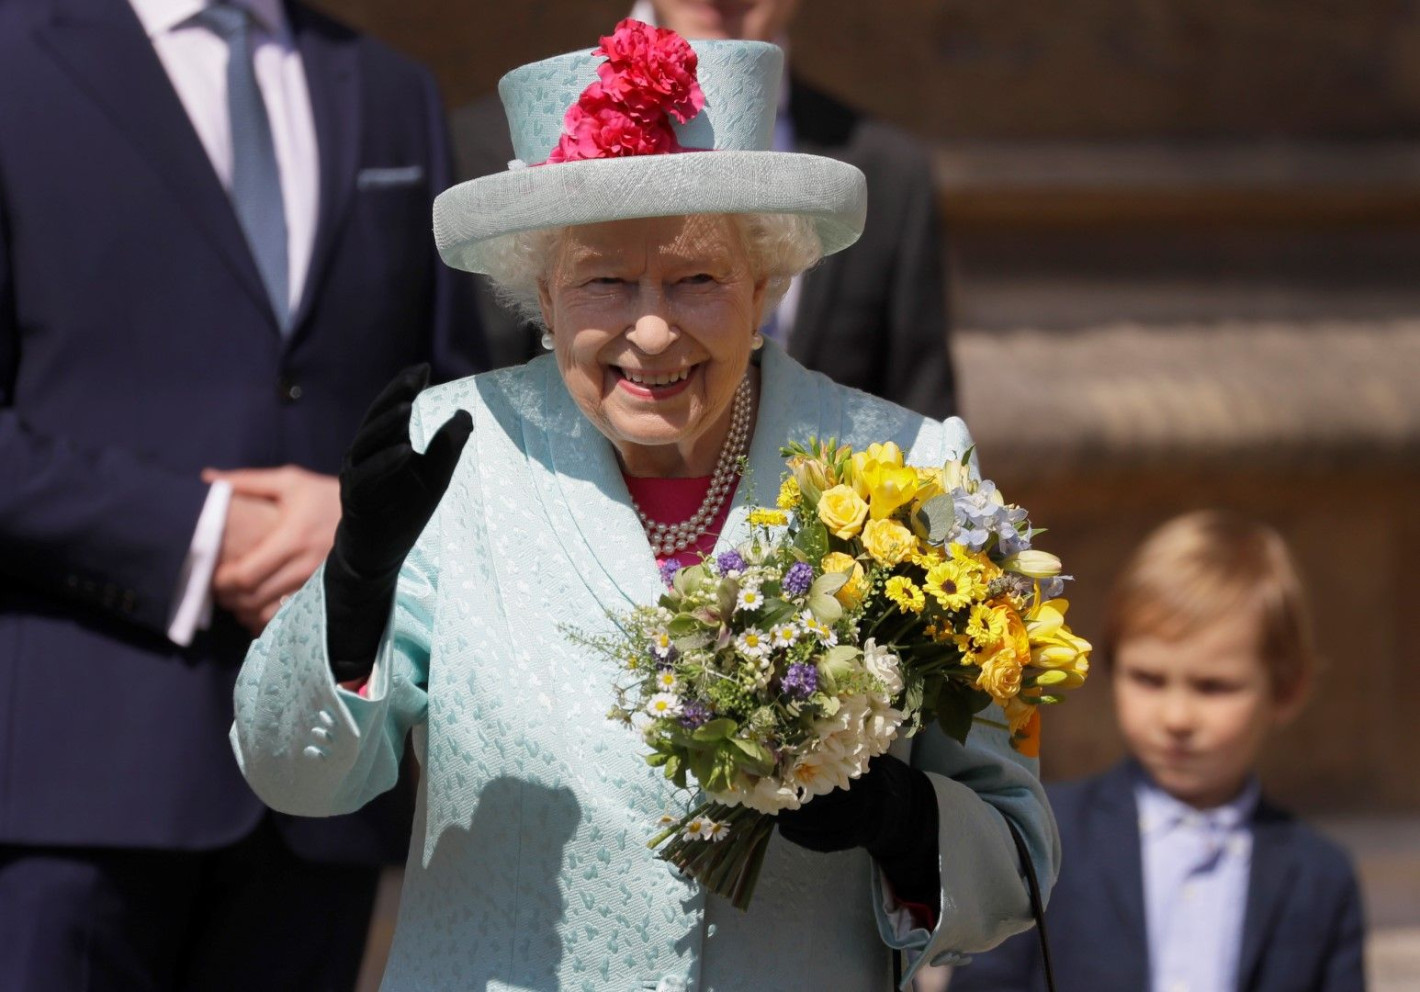 Елизабет Втора стана на 93 години (Защо Меган Маркъл пропусна рождения й ден?)